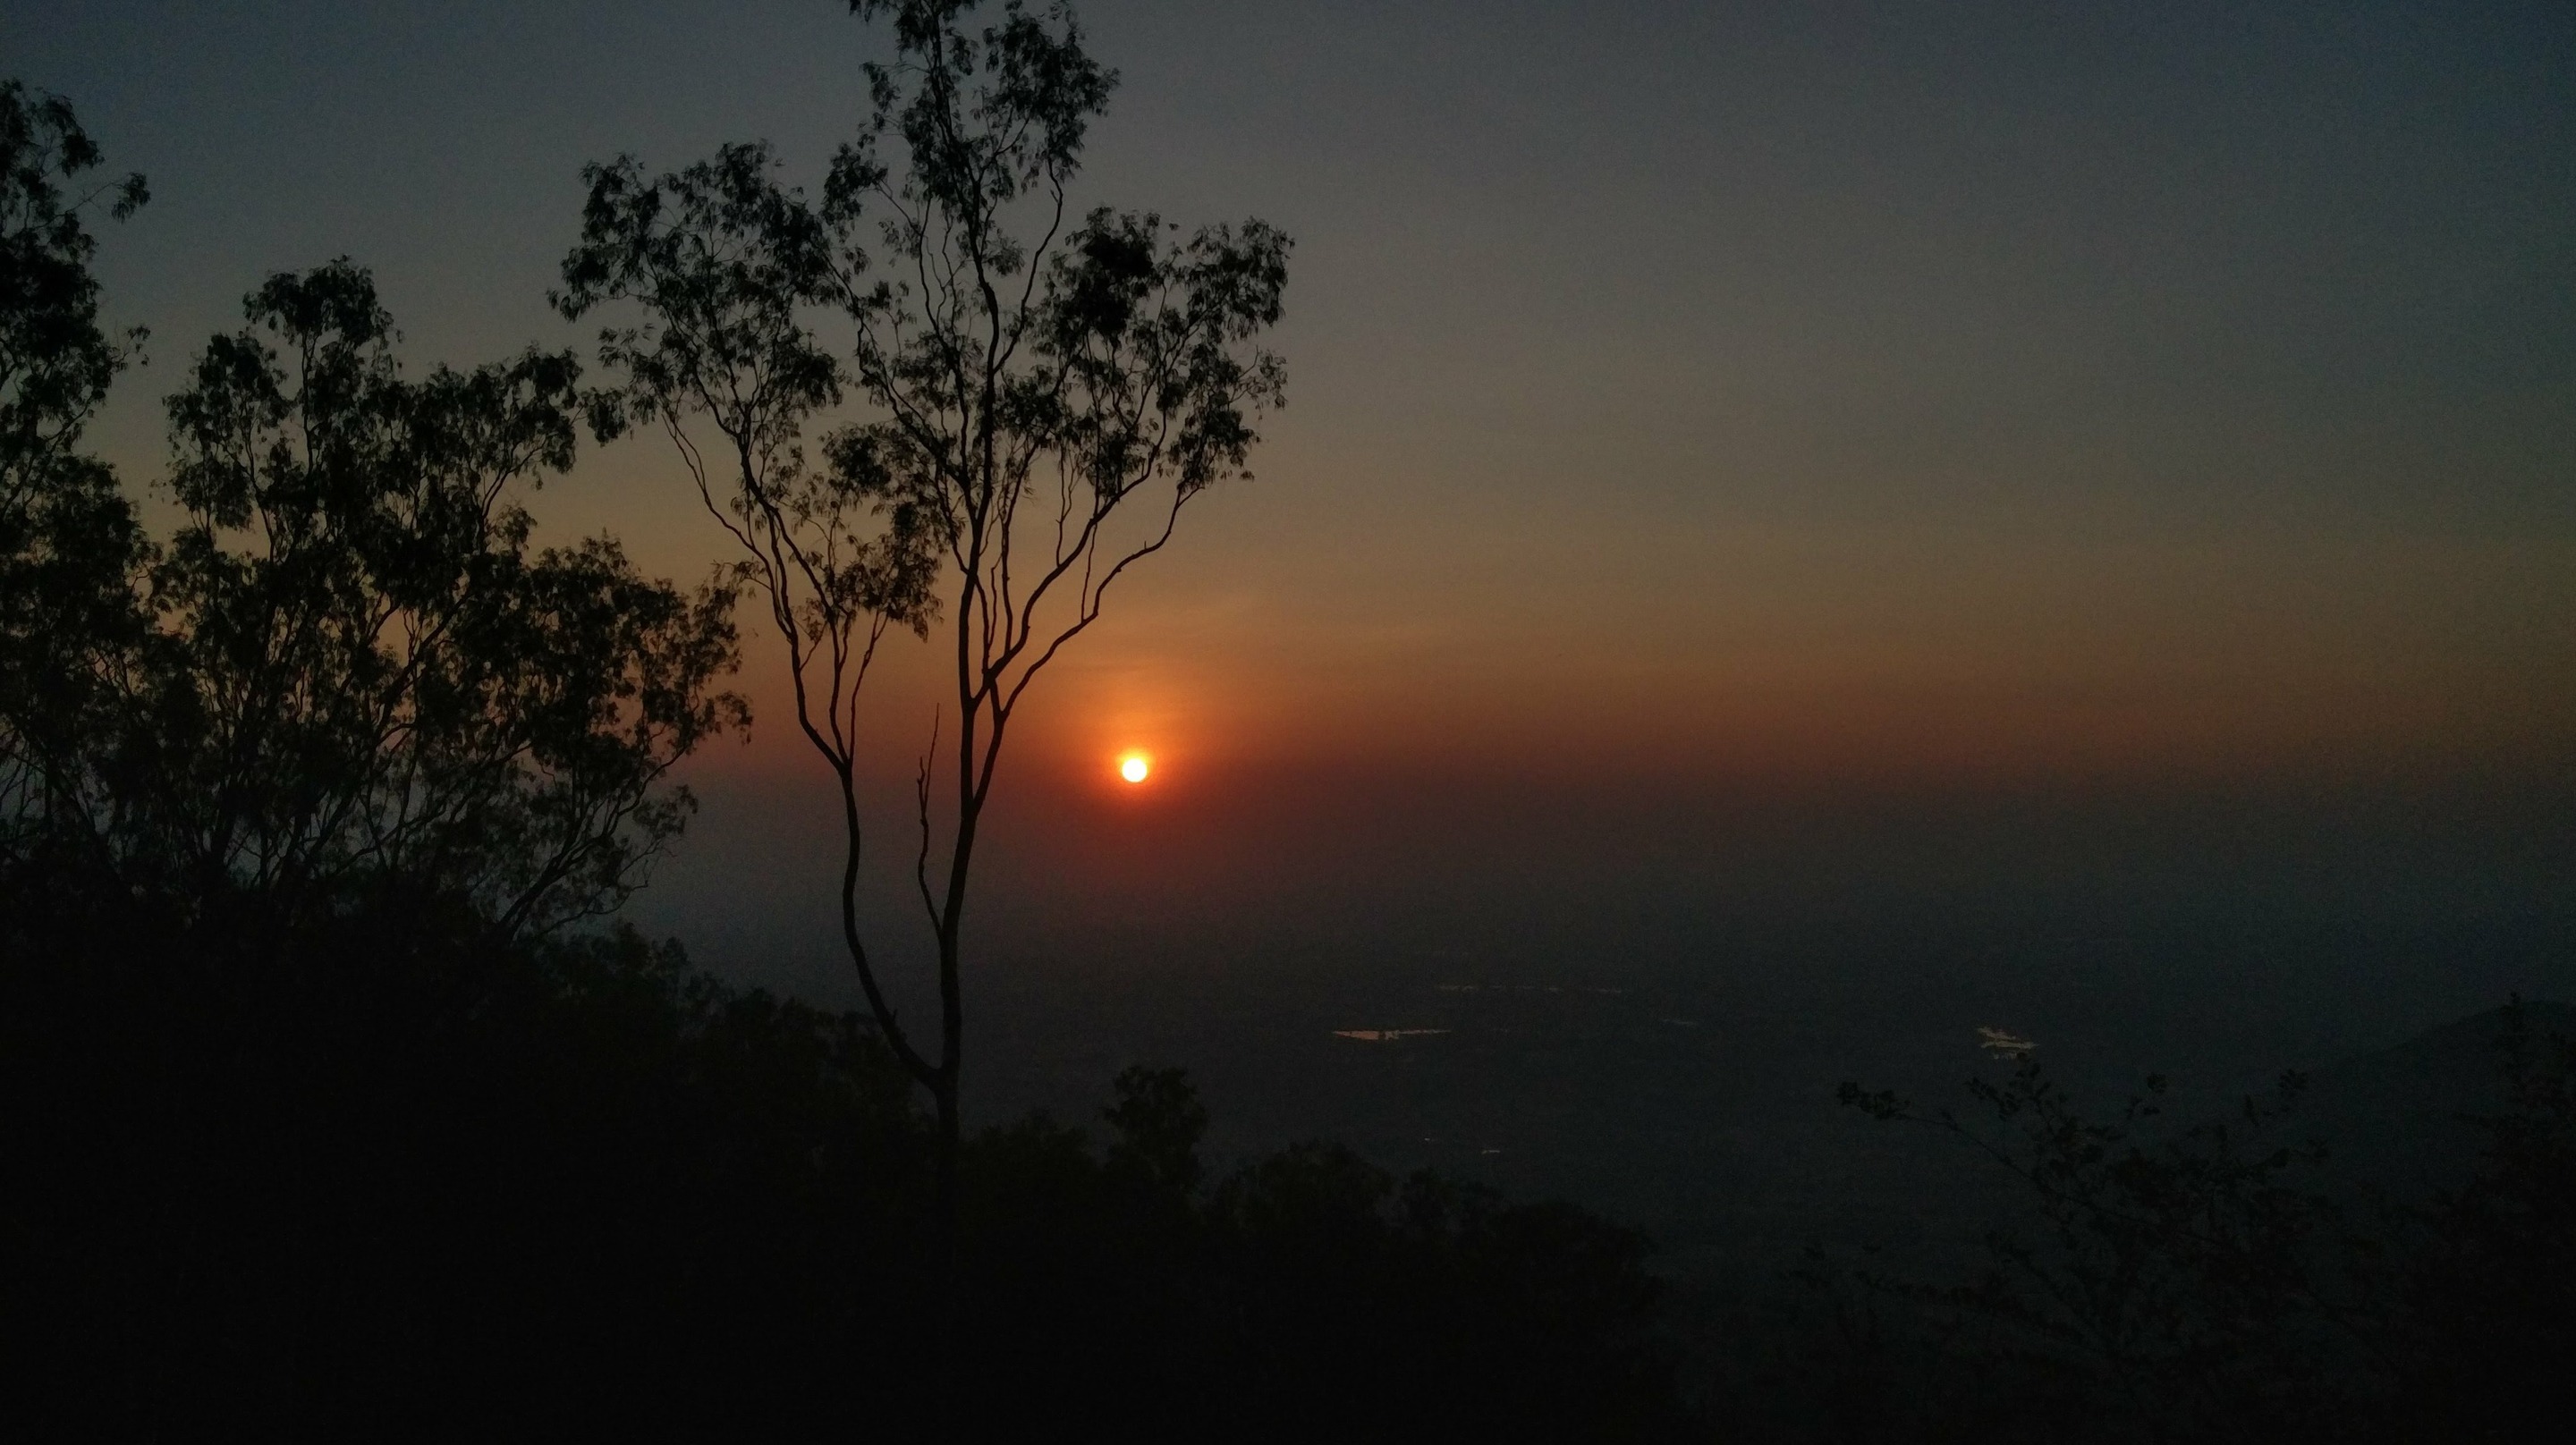 nandi-hills-sunset